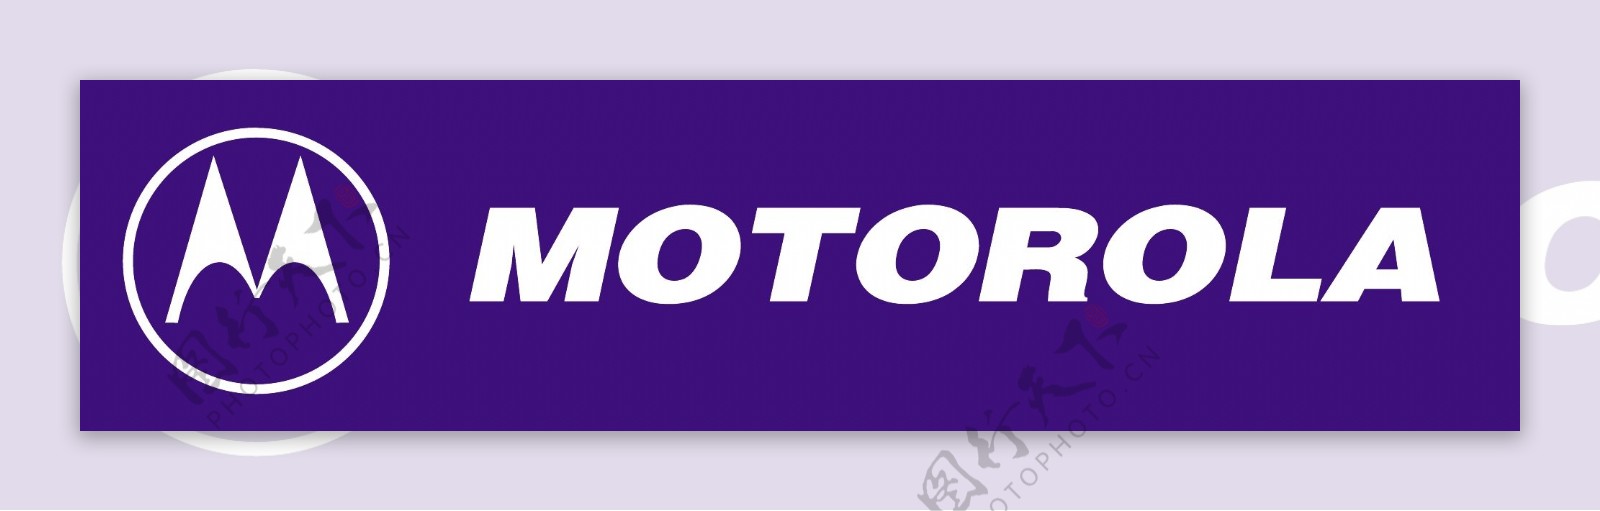 摩托罗拉logo3